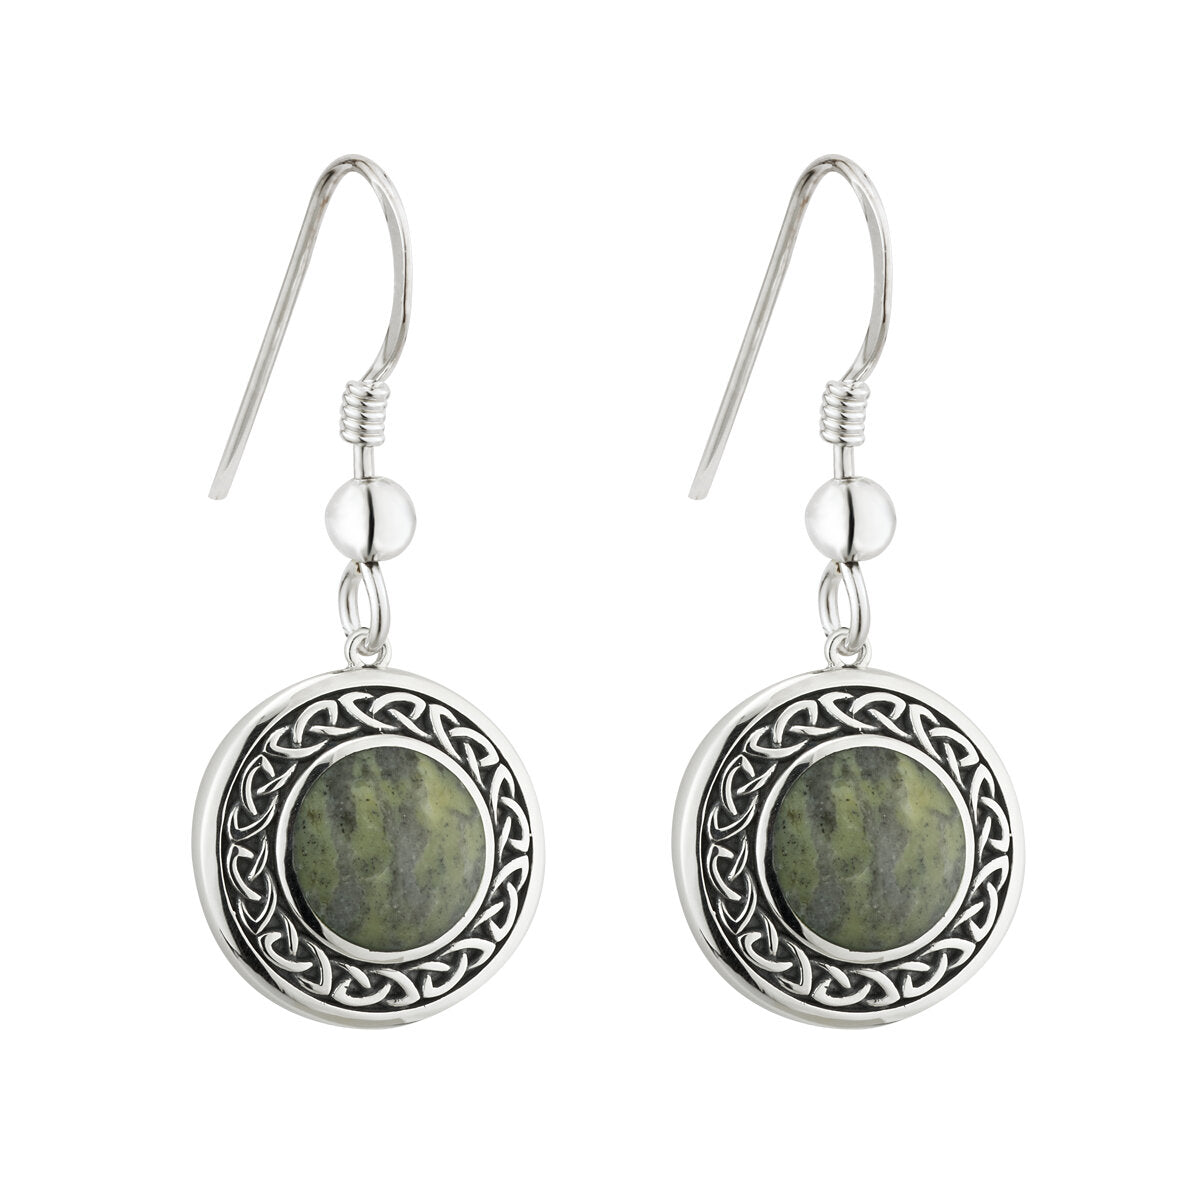 S33772 Connemara Marble & Celtic Knot Earrings